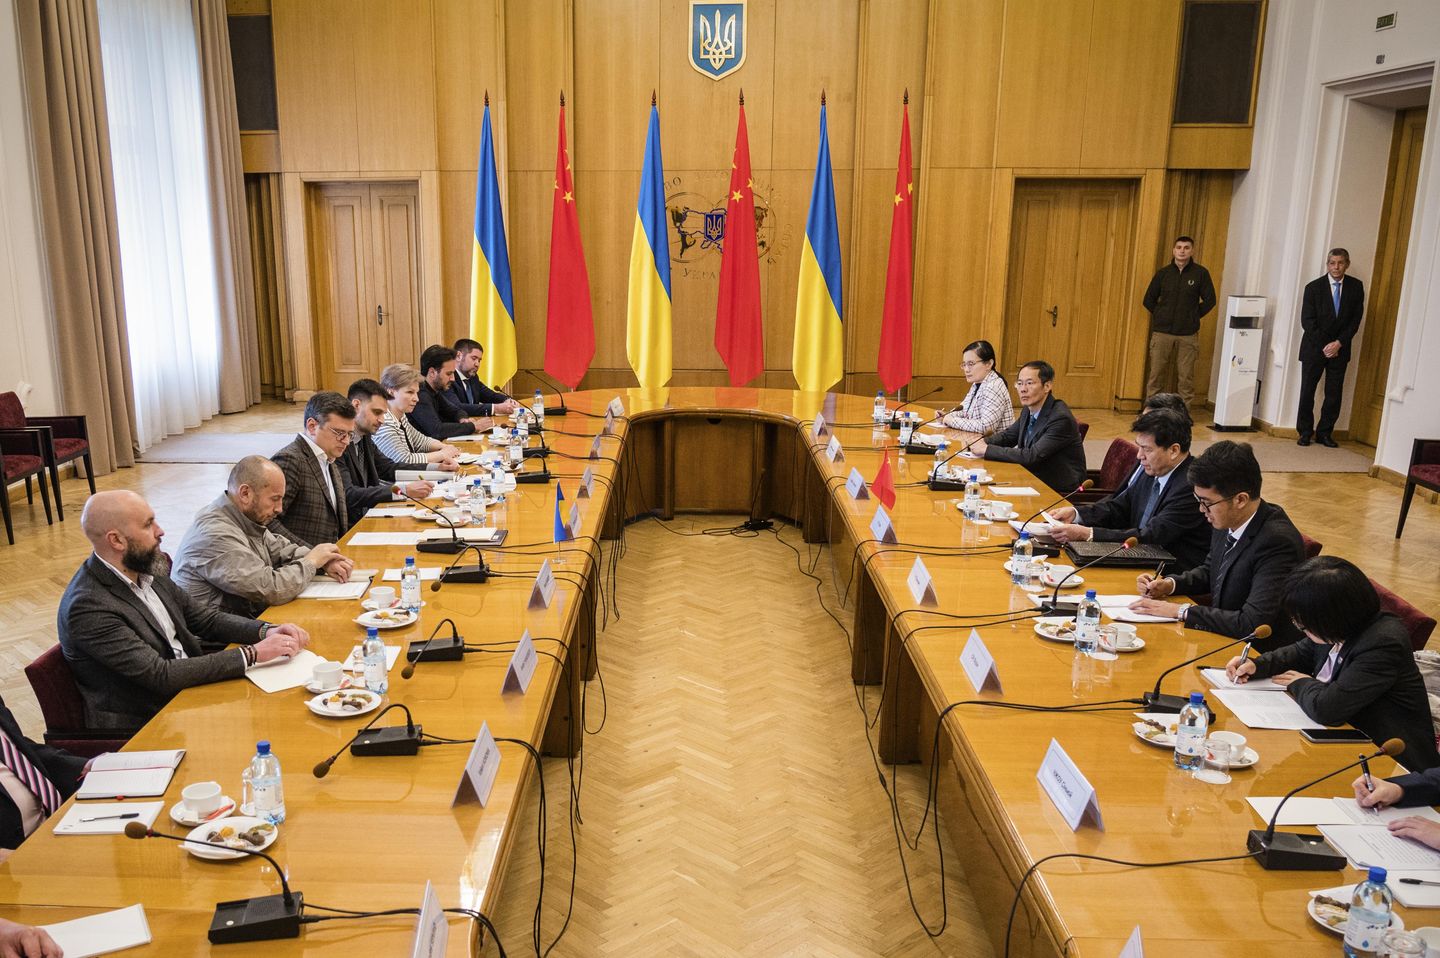 Ukrayna dışişleri bakanı ve konuk Çin elçisi barışı görüştü, ancak sonraki adımlar belirsiz